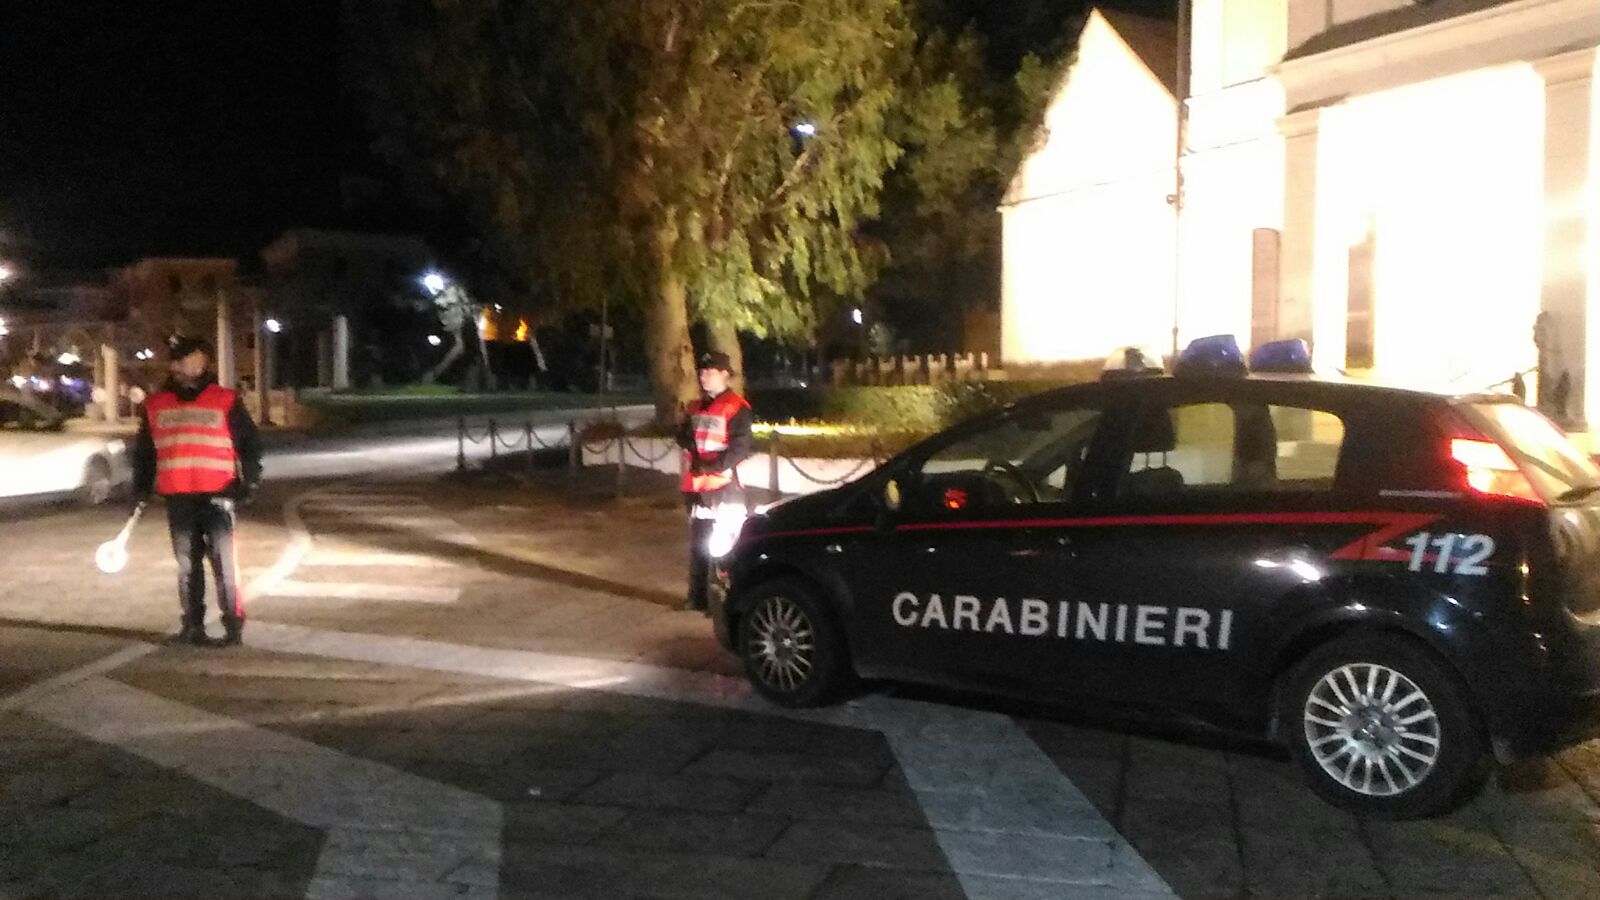 Gallura, dà in escandescenza e prende a ciabattate i Carabinieri: arrestata